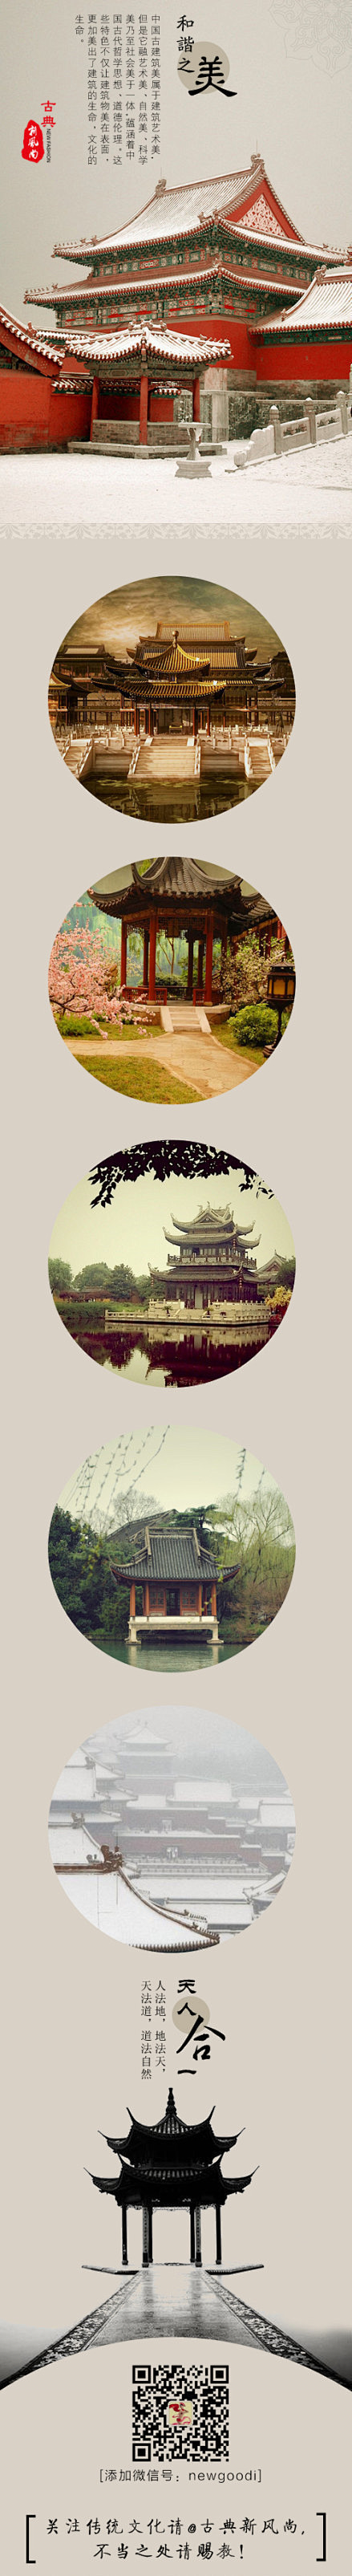 中国古建筑 · 天人合一的和谐之美